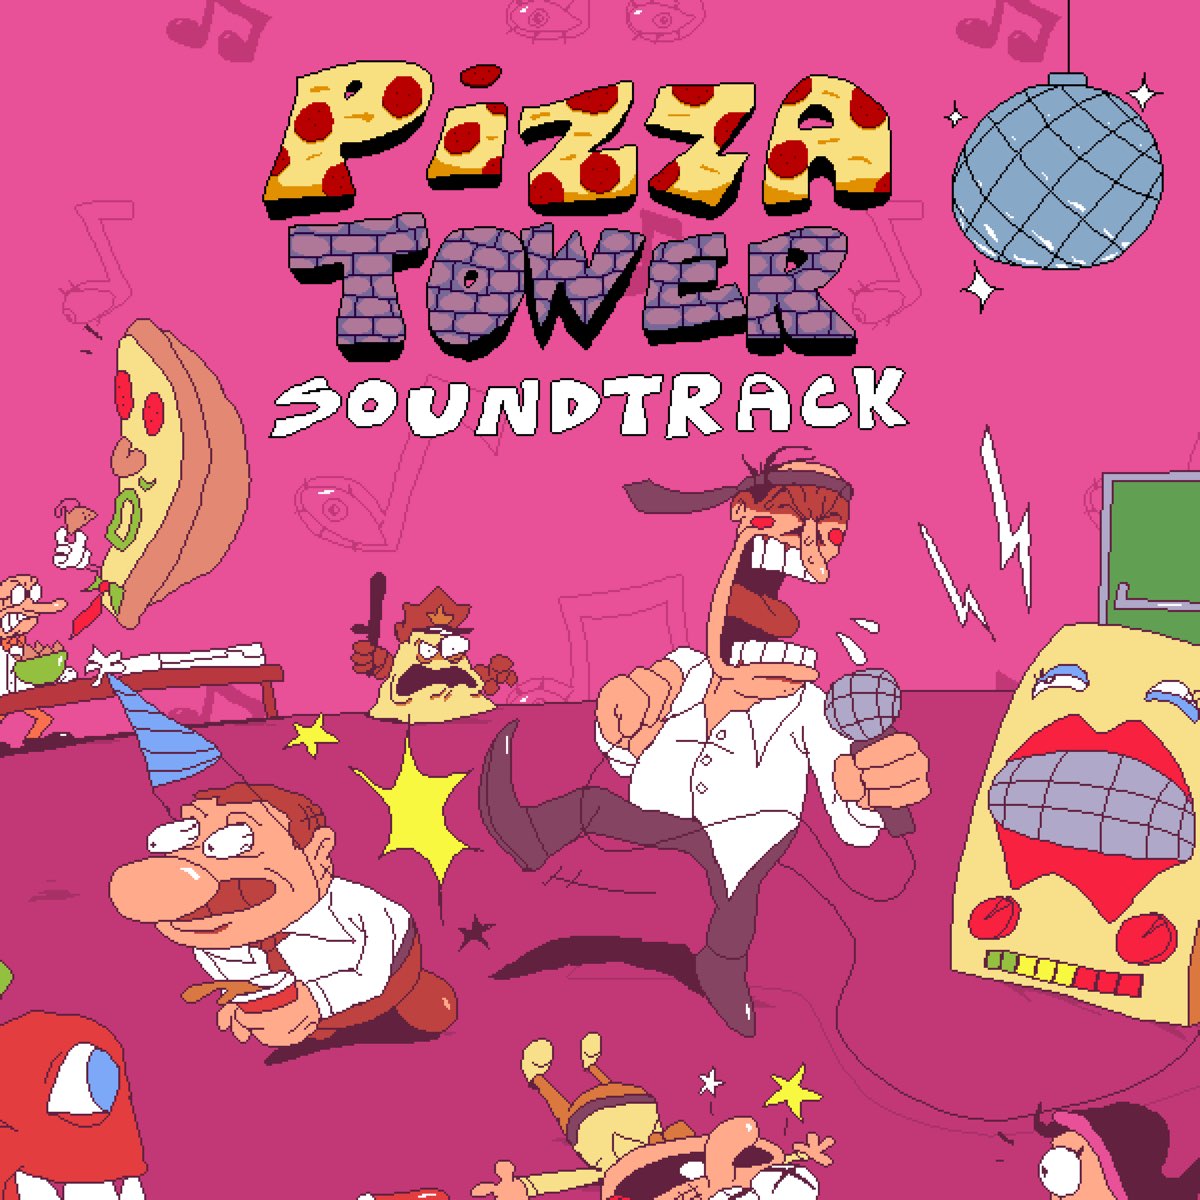 Stream DarkSonic5  Listen to Pizza Tower with lyrics playlist